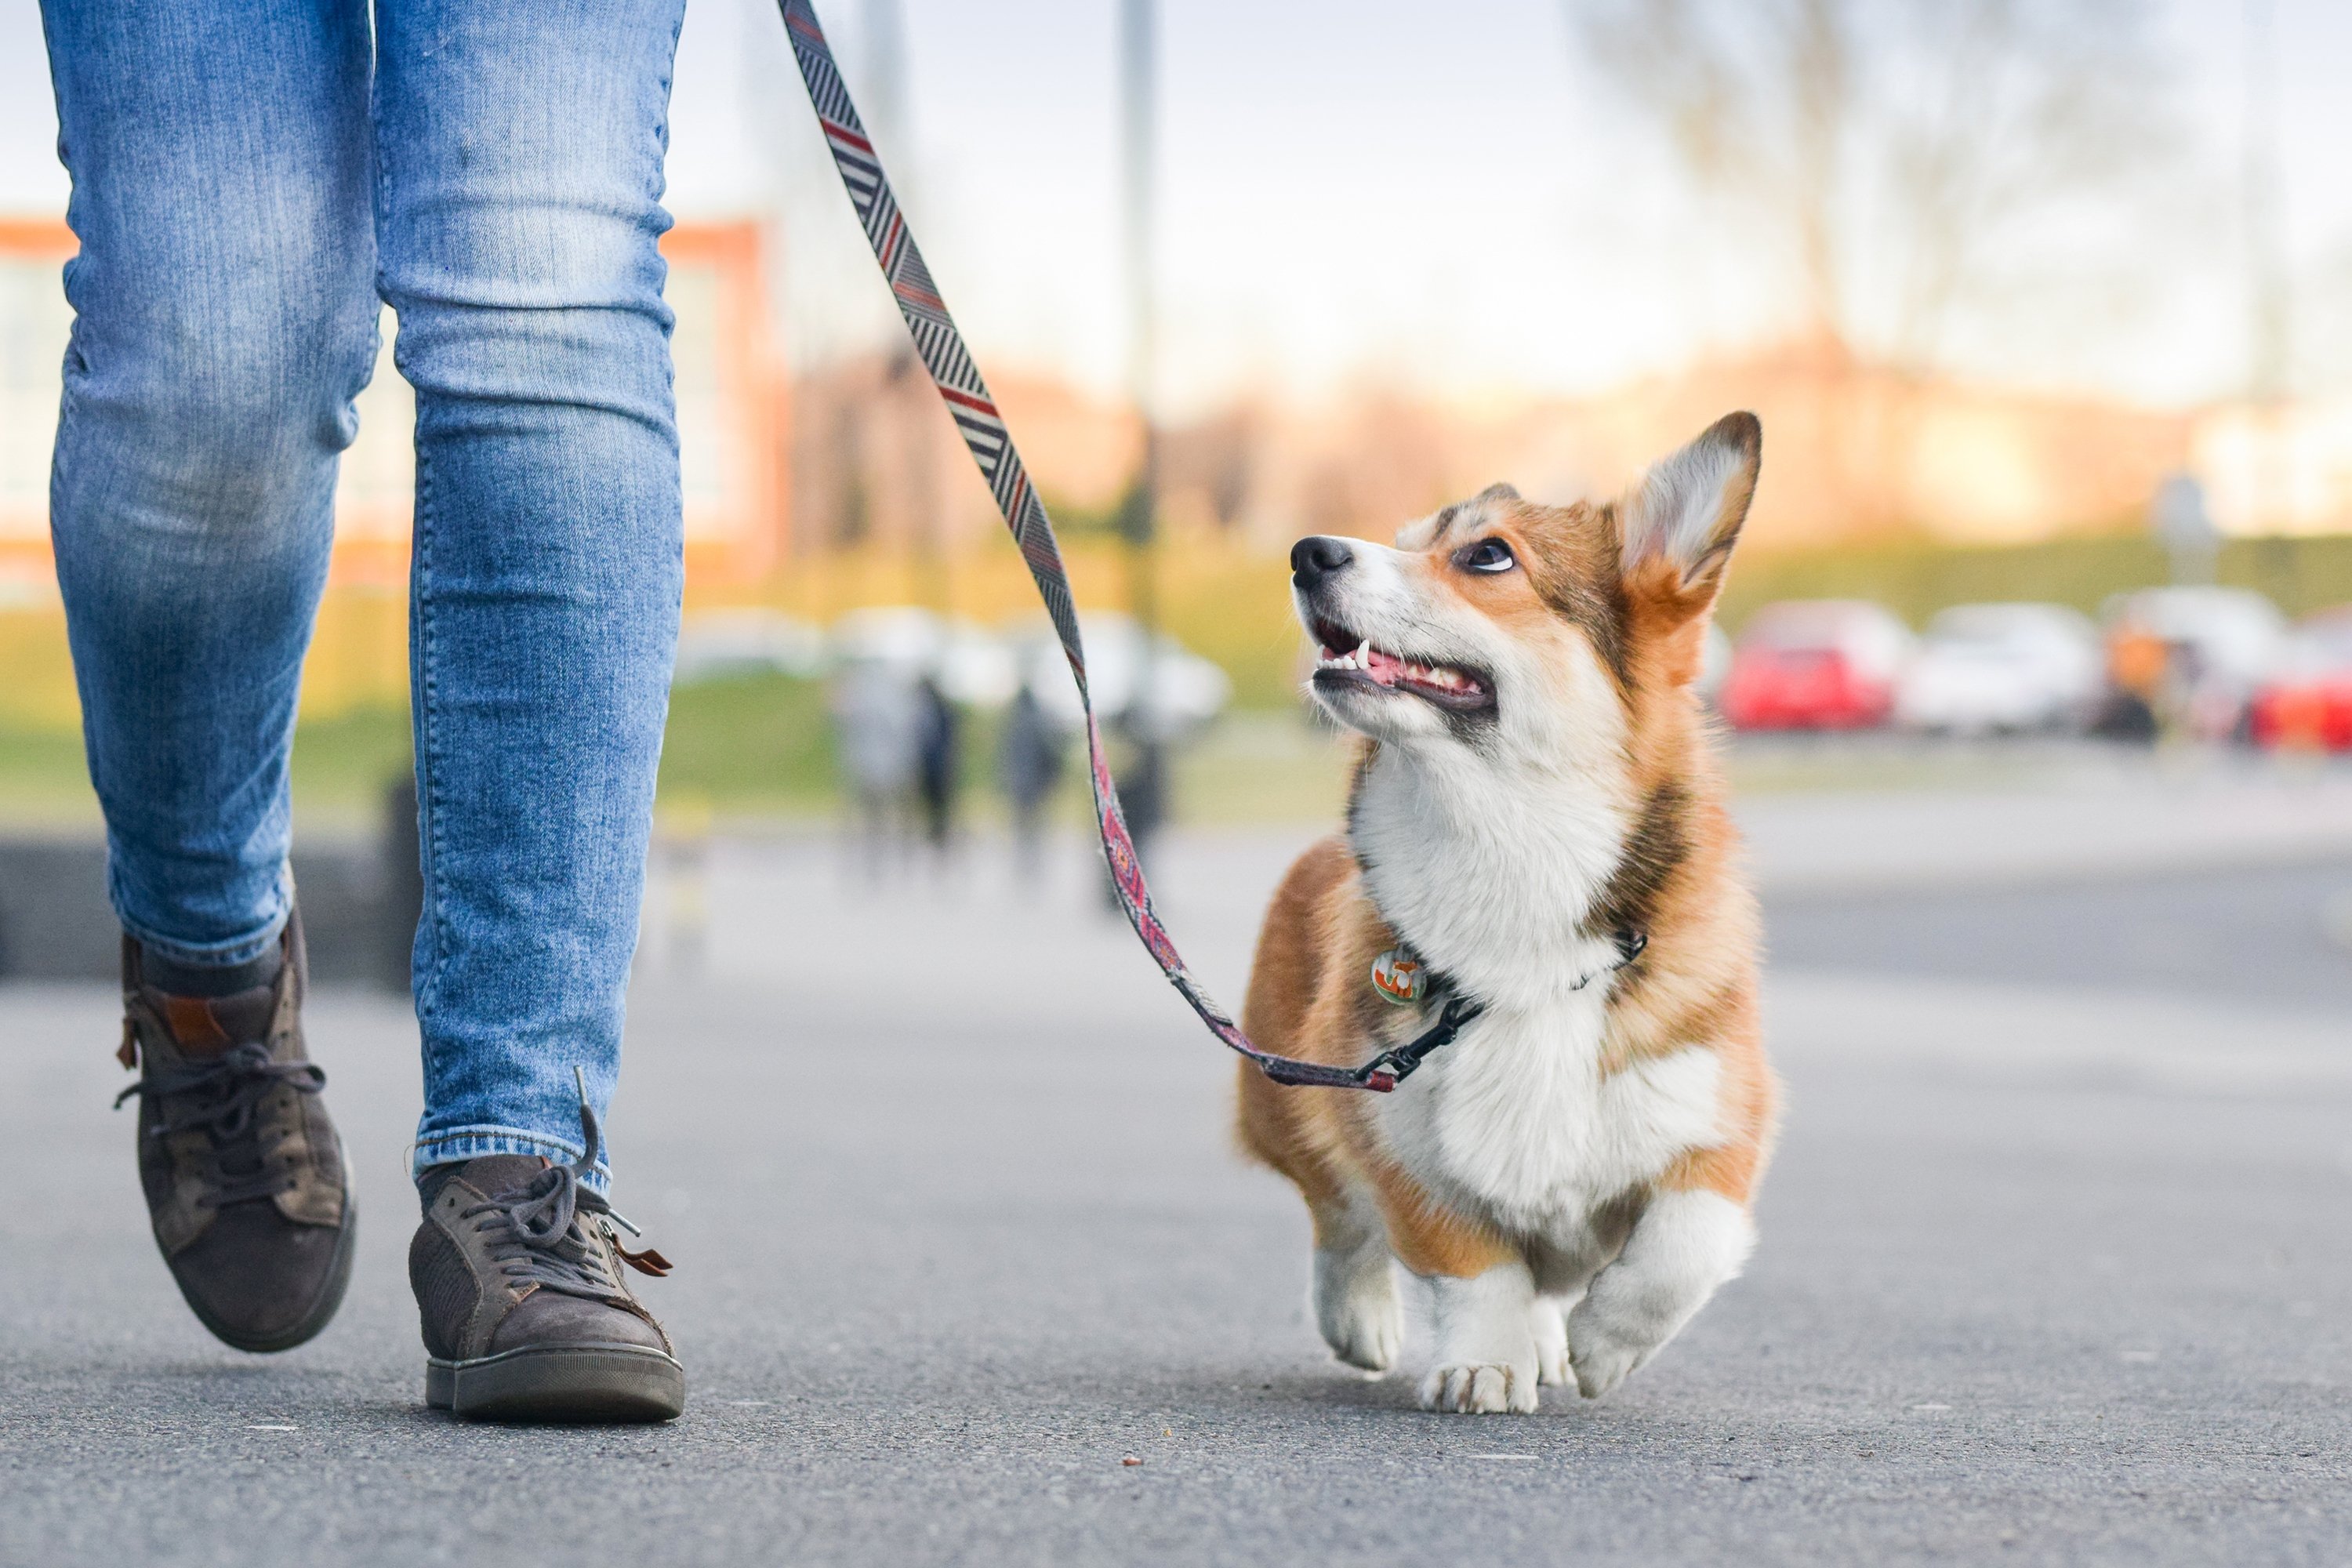 New mandatory dog walking rule baffles Germany | Daily Sabah